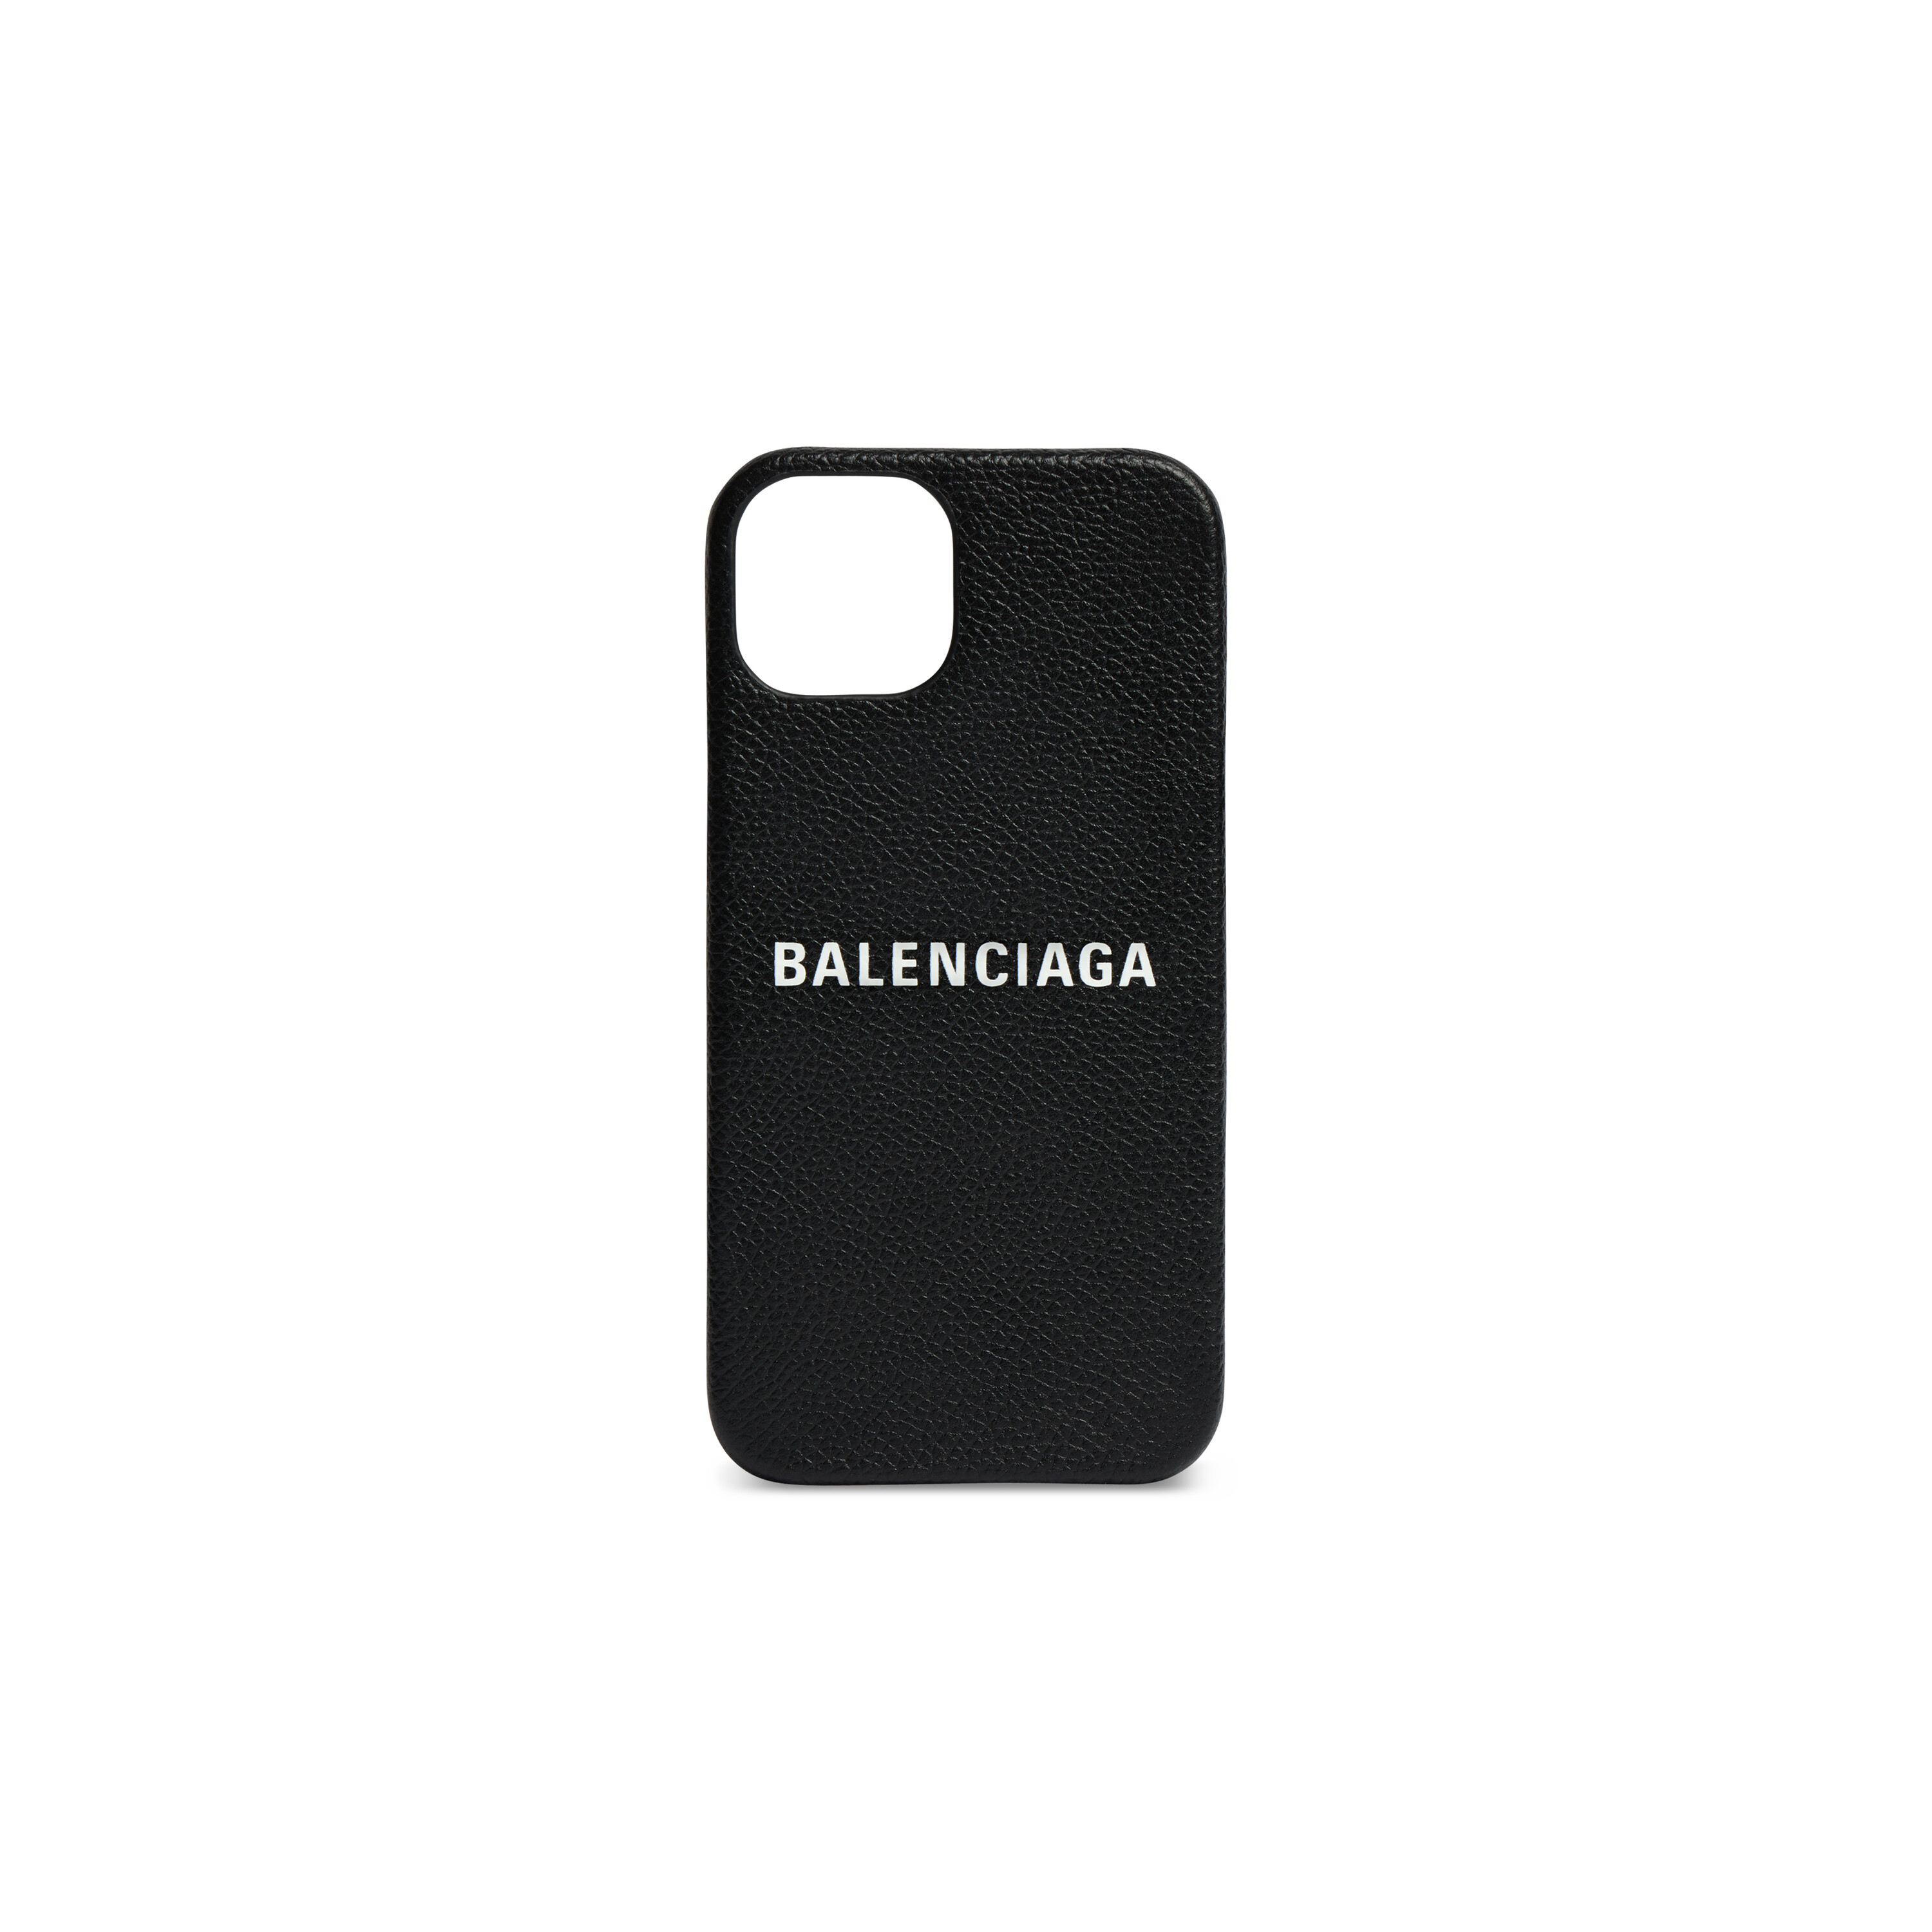 iPhoneケースを仕立てる定番人気ブランドのおすすめスマホケースiPhoneケースはBALENCIAGAのCASH スマートフォンケース